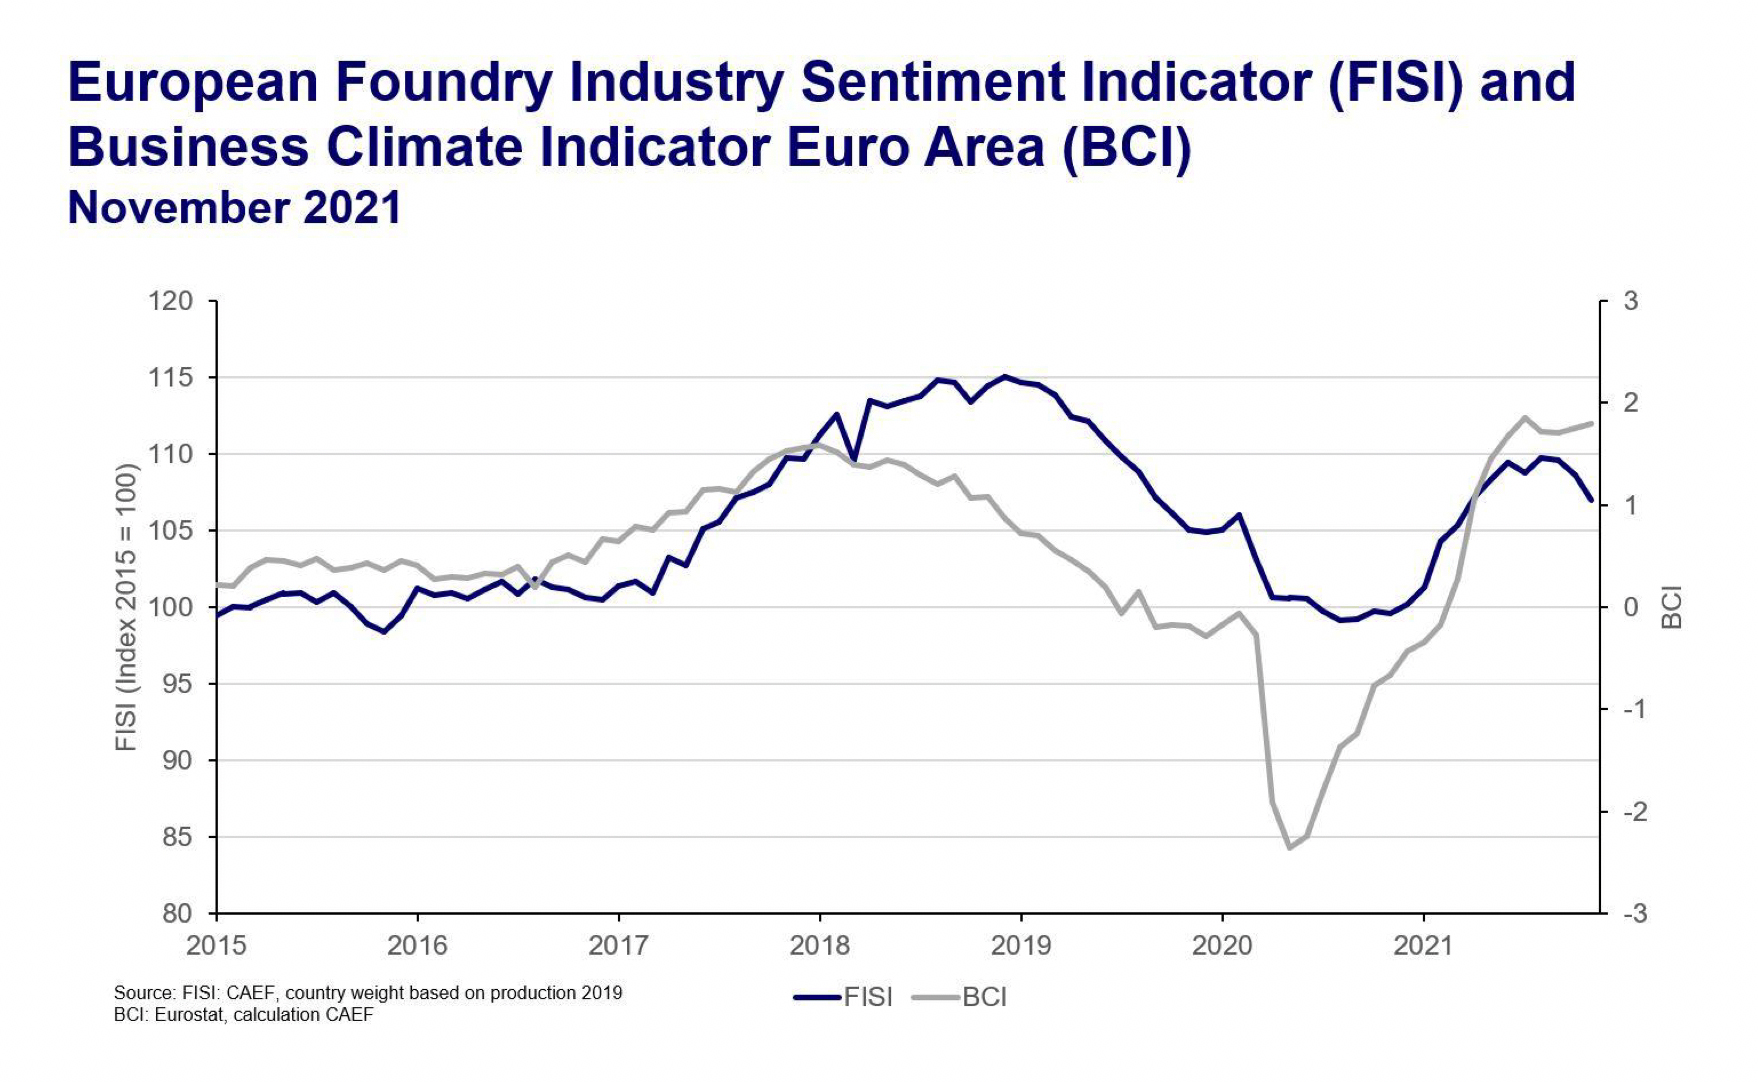 FISI. Sentimiento de la industria europea de la fundición, noviembre de 2021: Retroceso al final del año